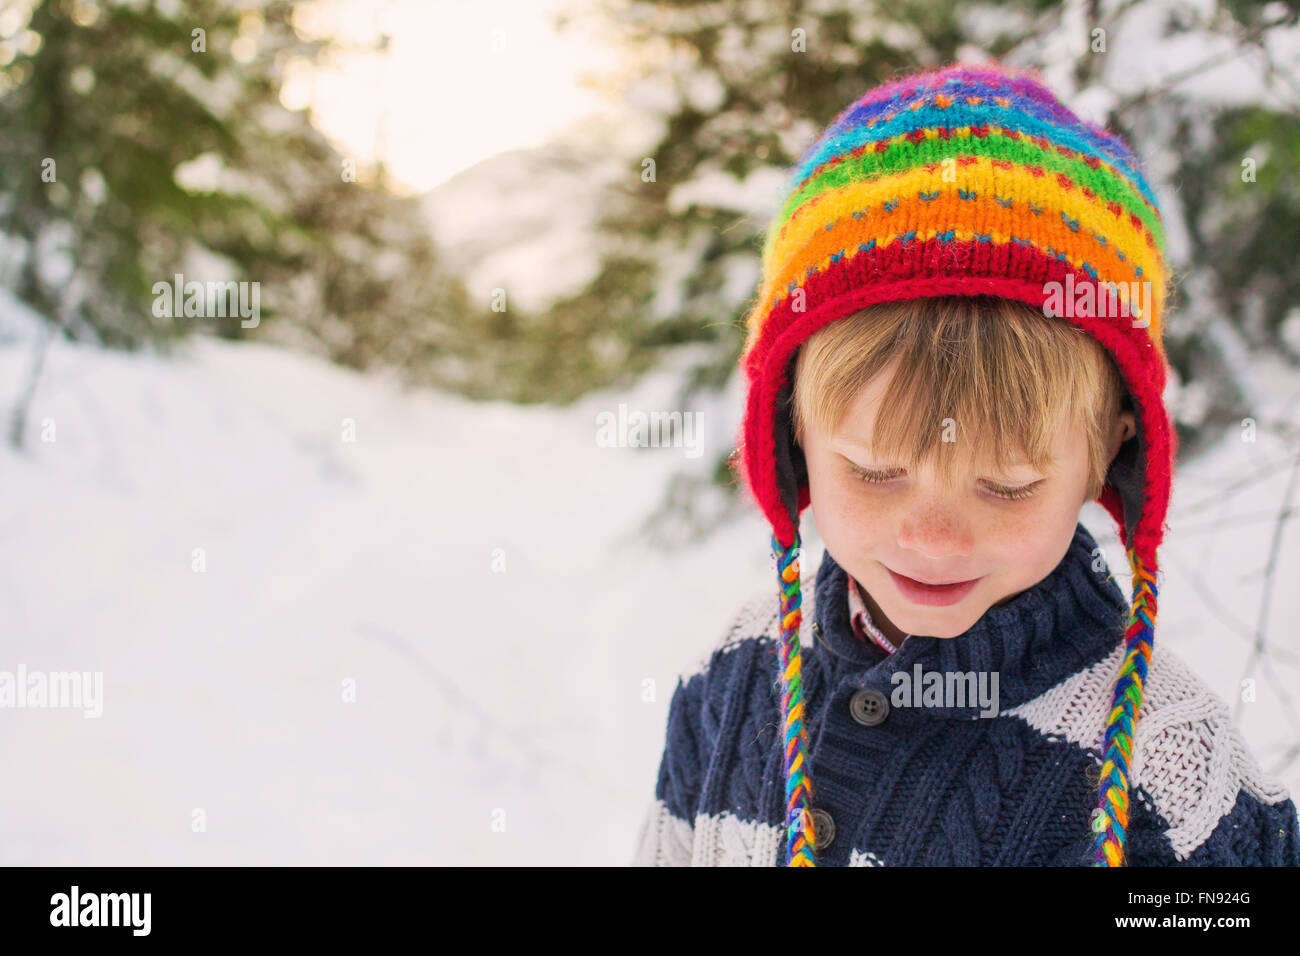 Chico en sombrero multicolor en la nieve mirando hacia abajo Foto de stock